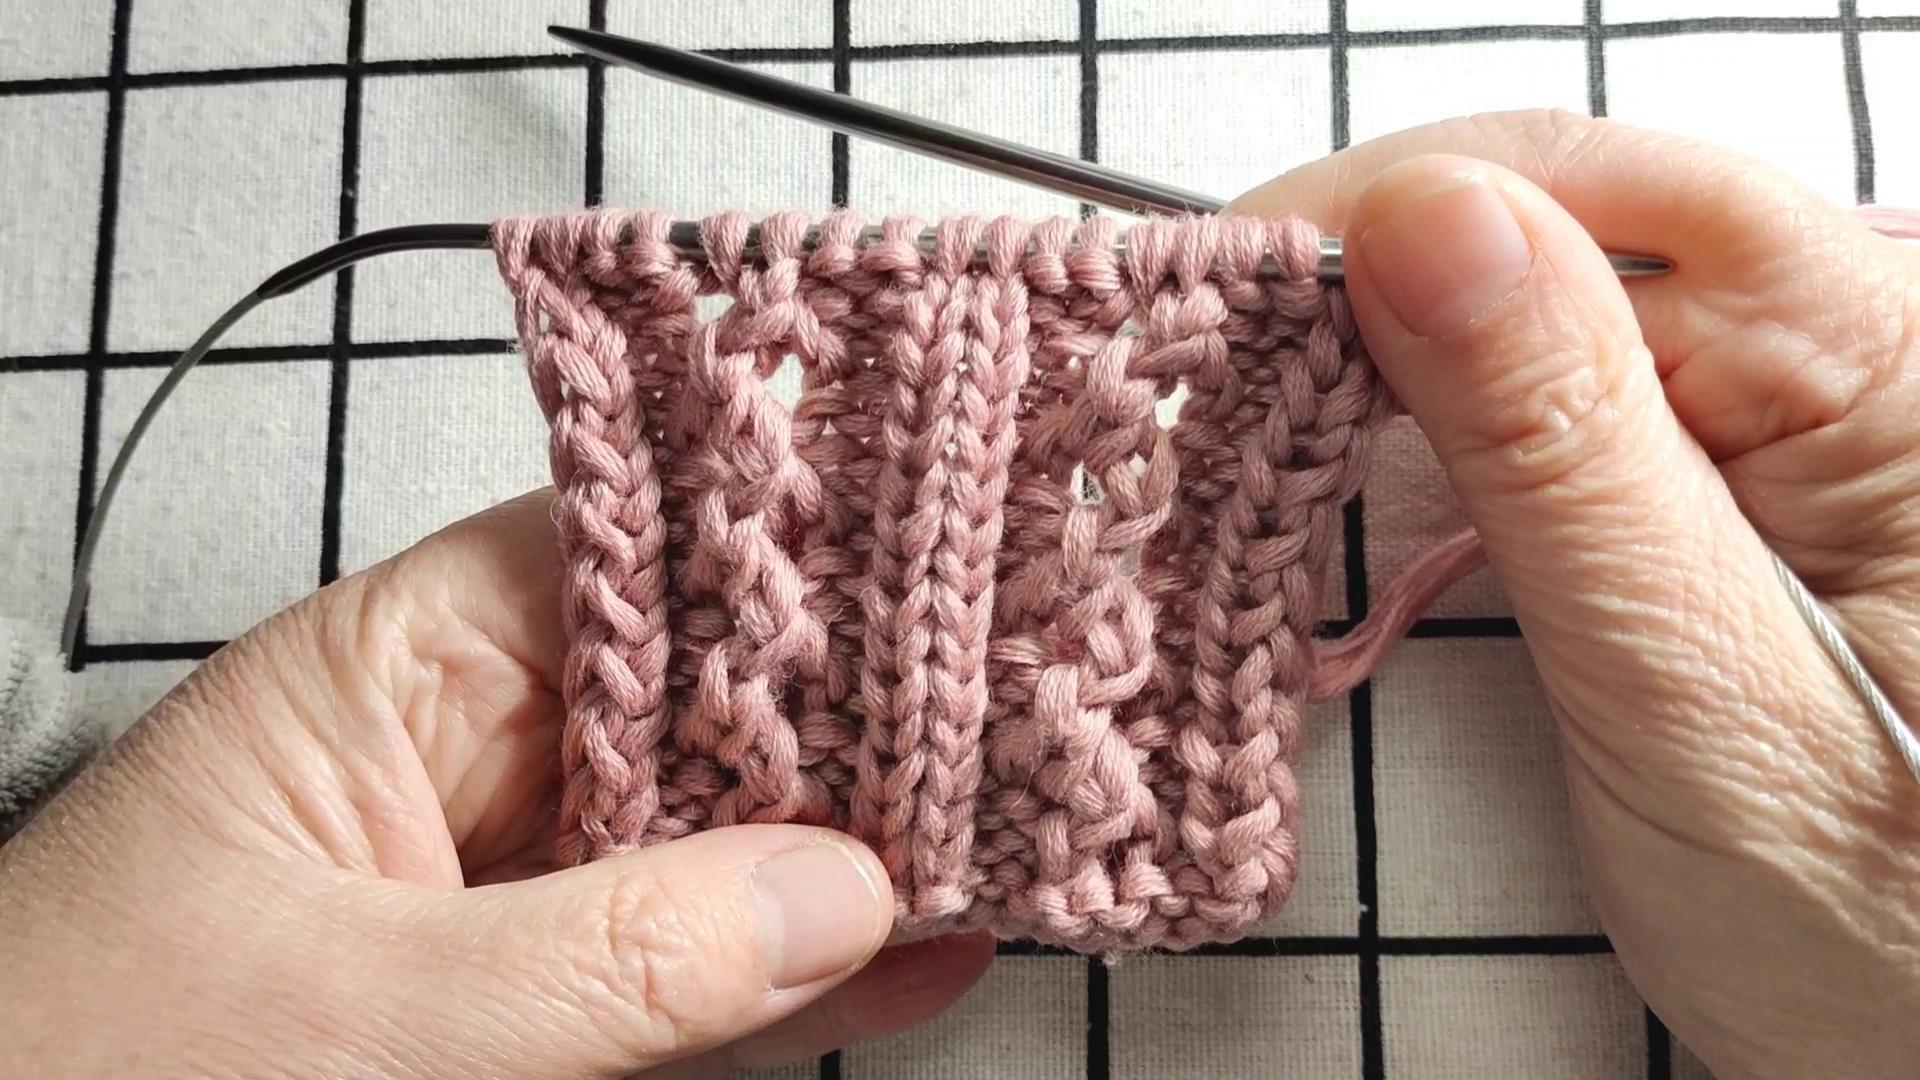 竖条镂空花编织教程，适合编织春秋款式的毛衣，喜欢可以收藏学习图解和视频